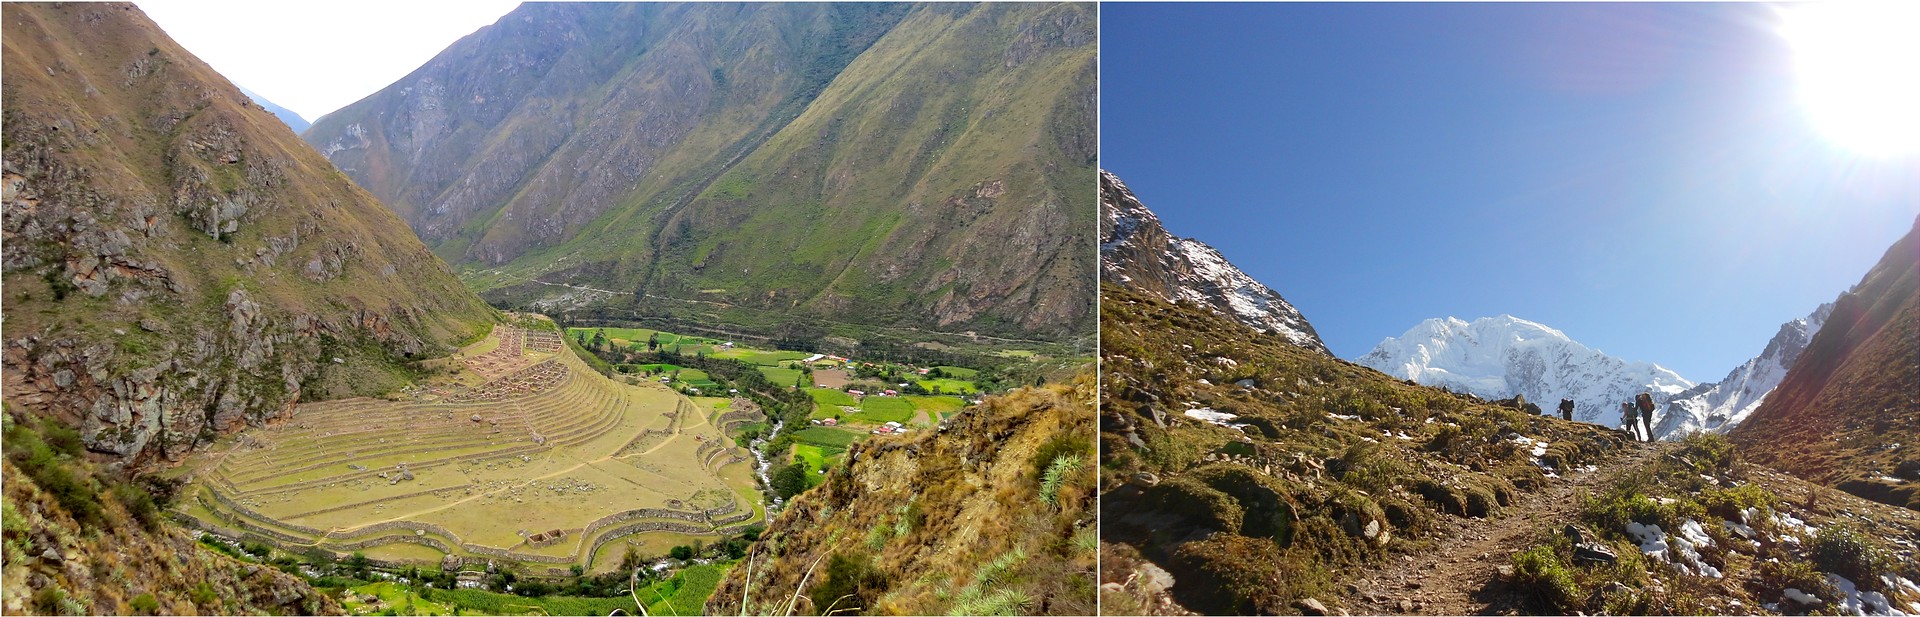 Inca Trail Vs Salkantay Trek